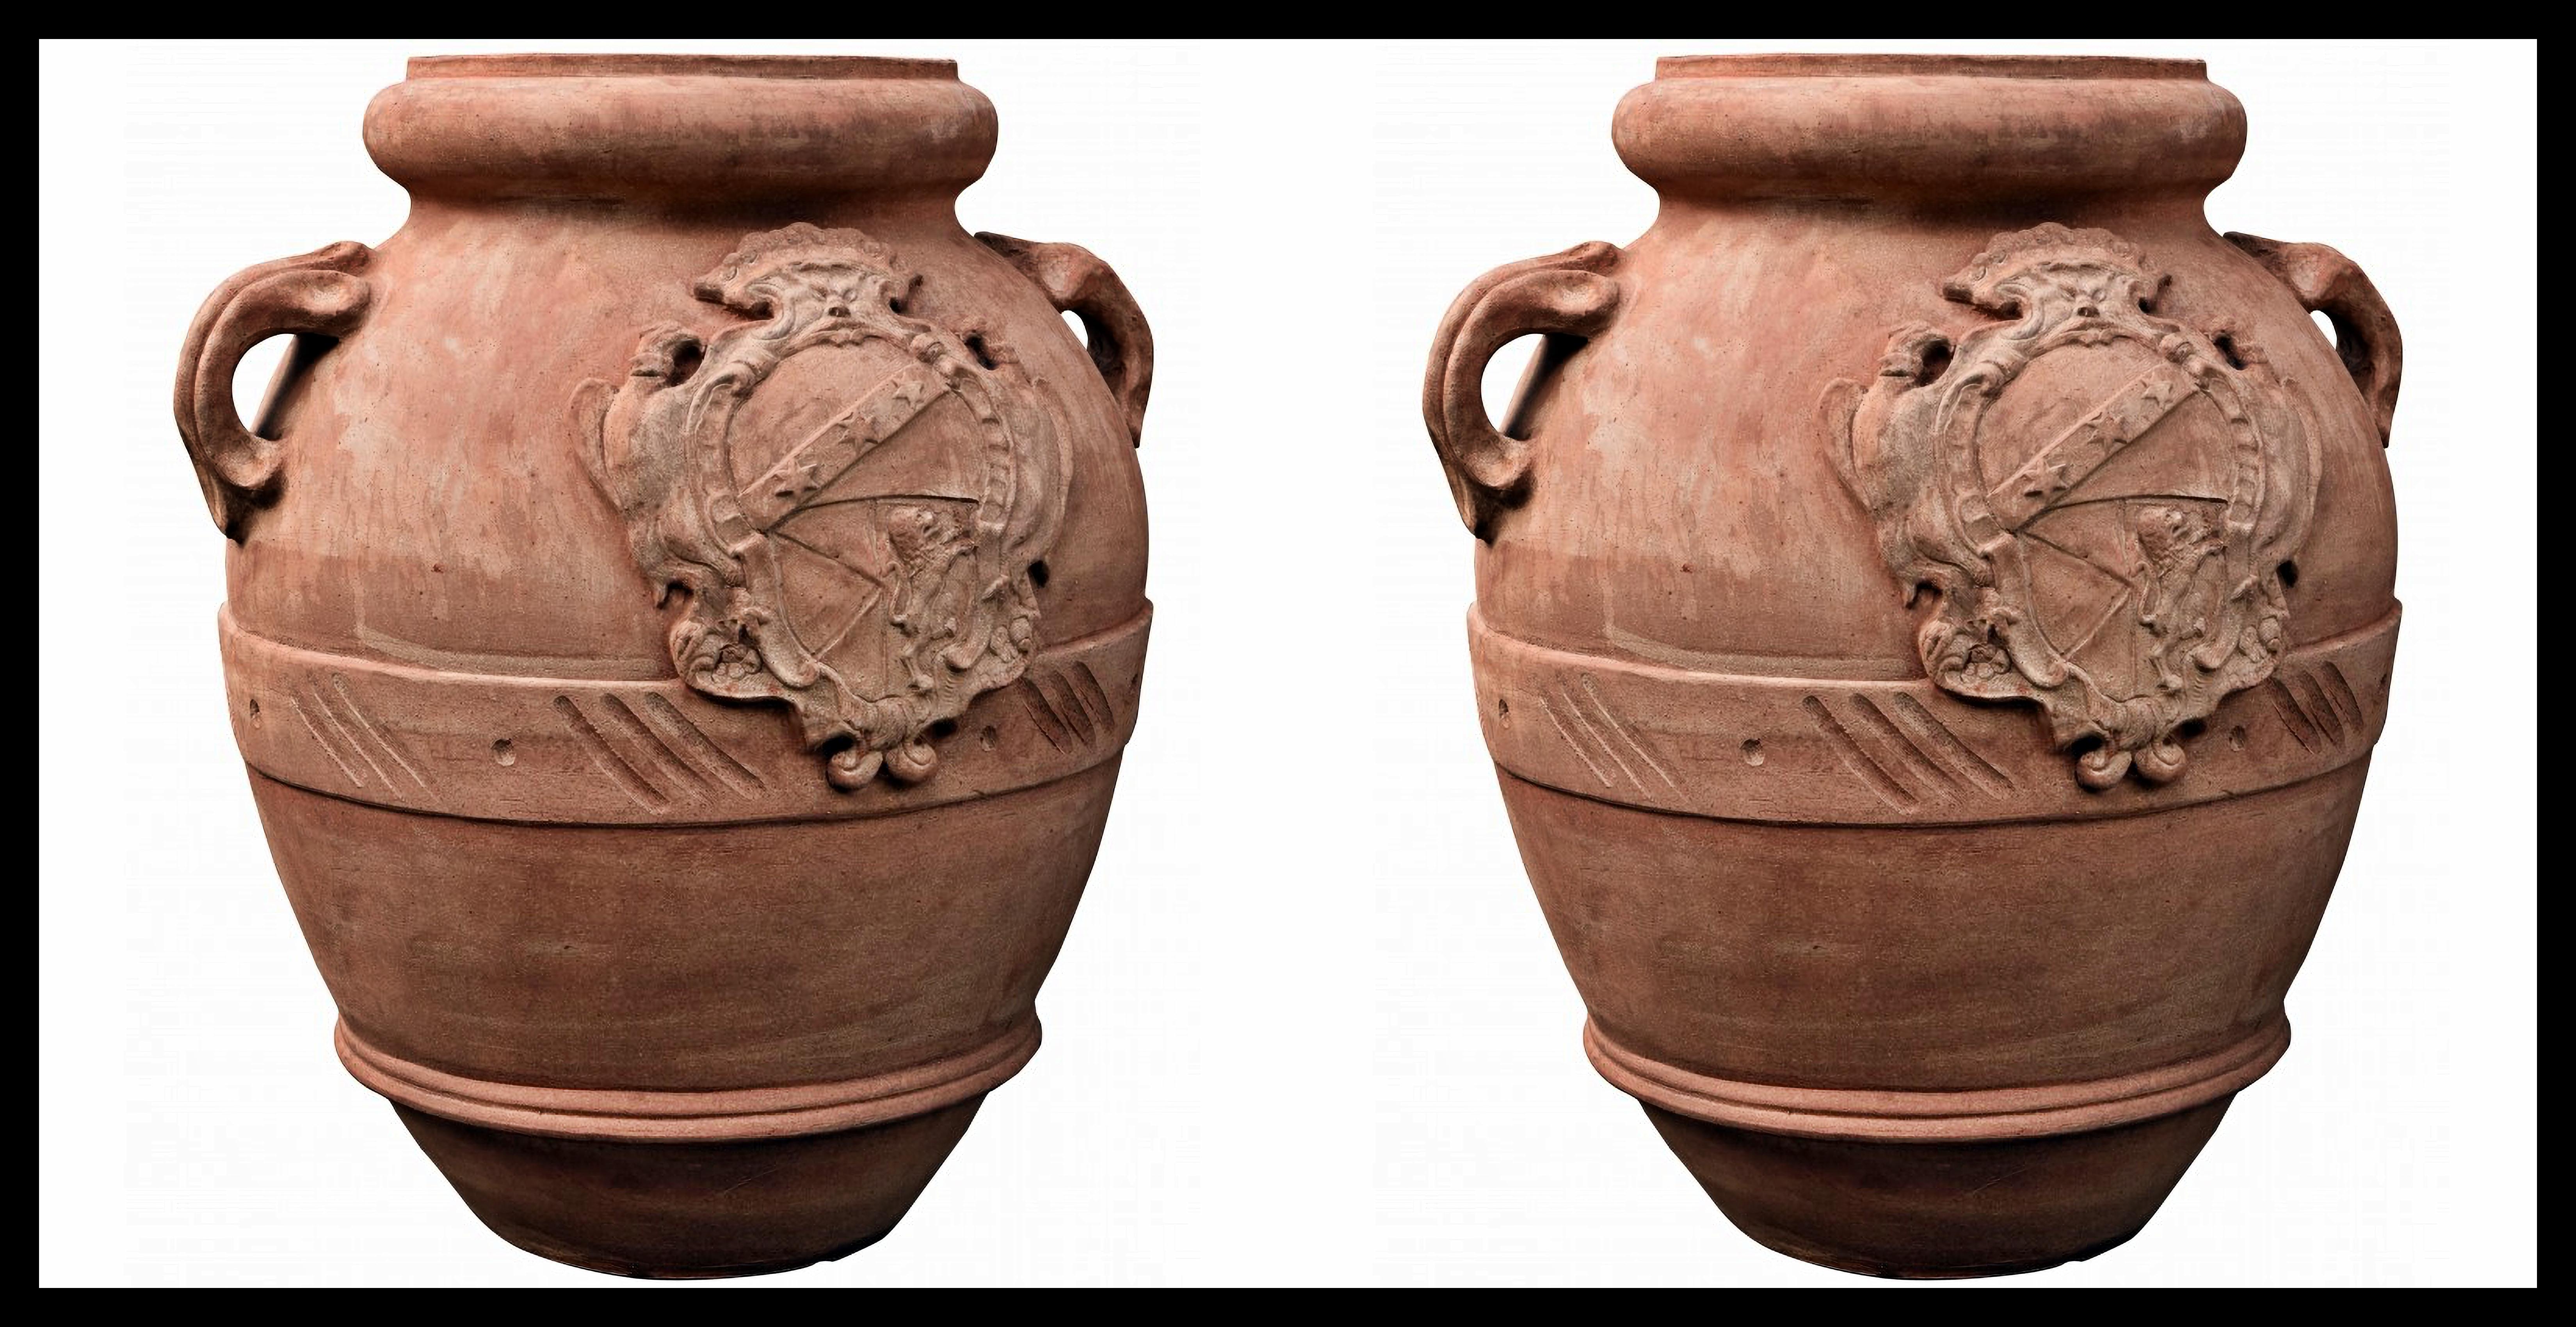 Paire de bâtons de fer mexicain H.70CM avec GINORI COAT OF ARMS TERRACOTTA 20ème siècle

Vase toscan typique, petit récipient à huile de haute qualité.
Copie fidèle d'un vase de la famille 